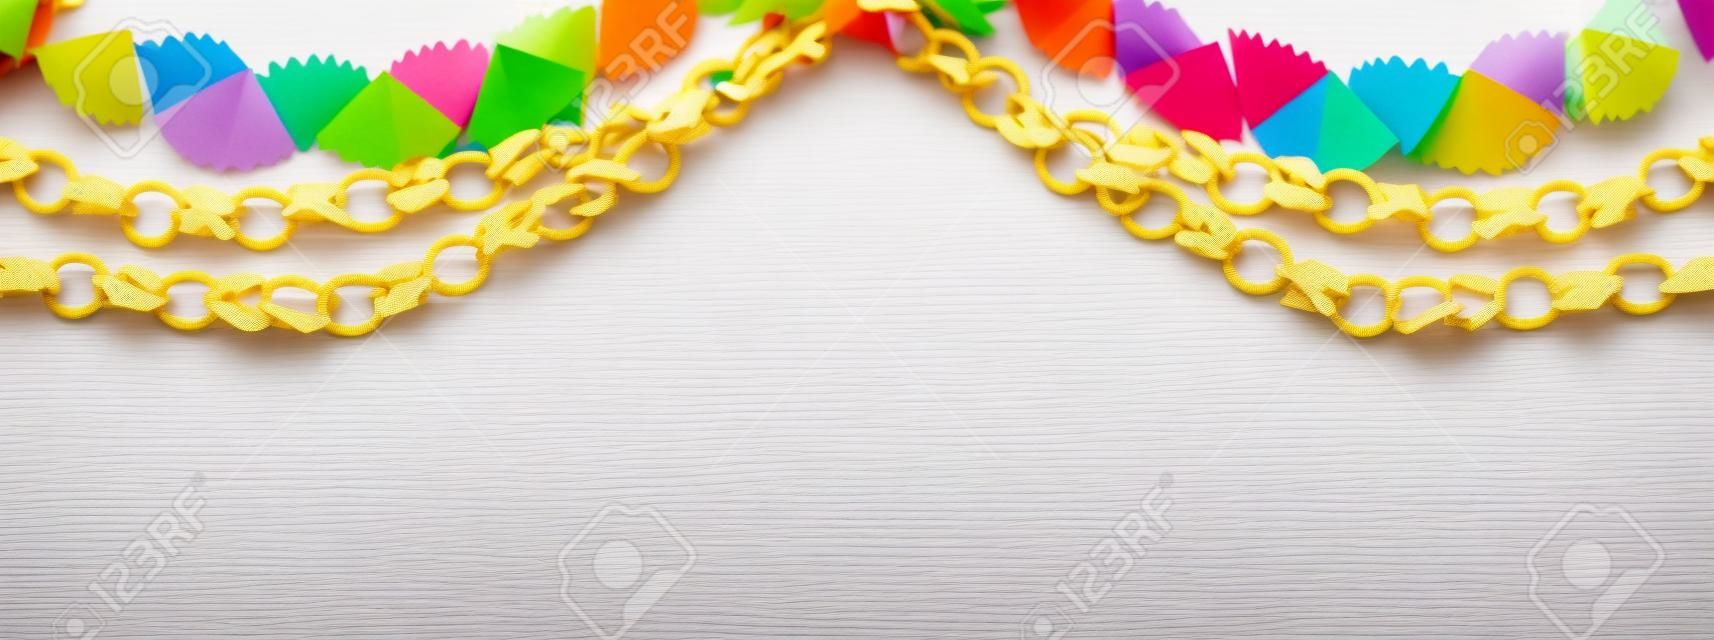 Guirnalda de cadena de colores de papel sobre fondo blanco de madera. Decoración tradicional judía de vacaciones de sucot